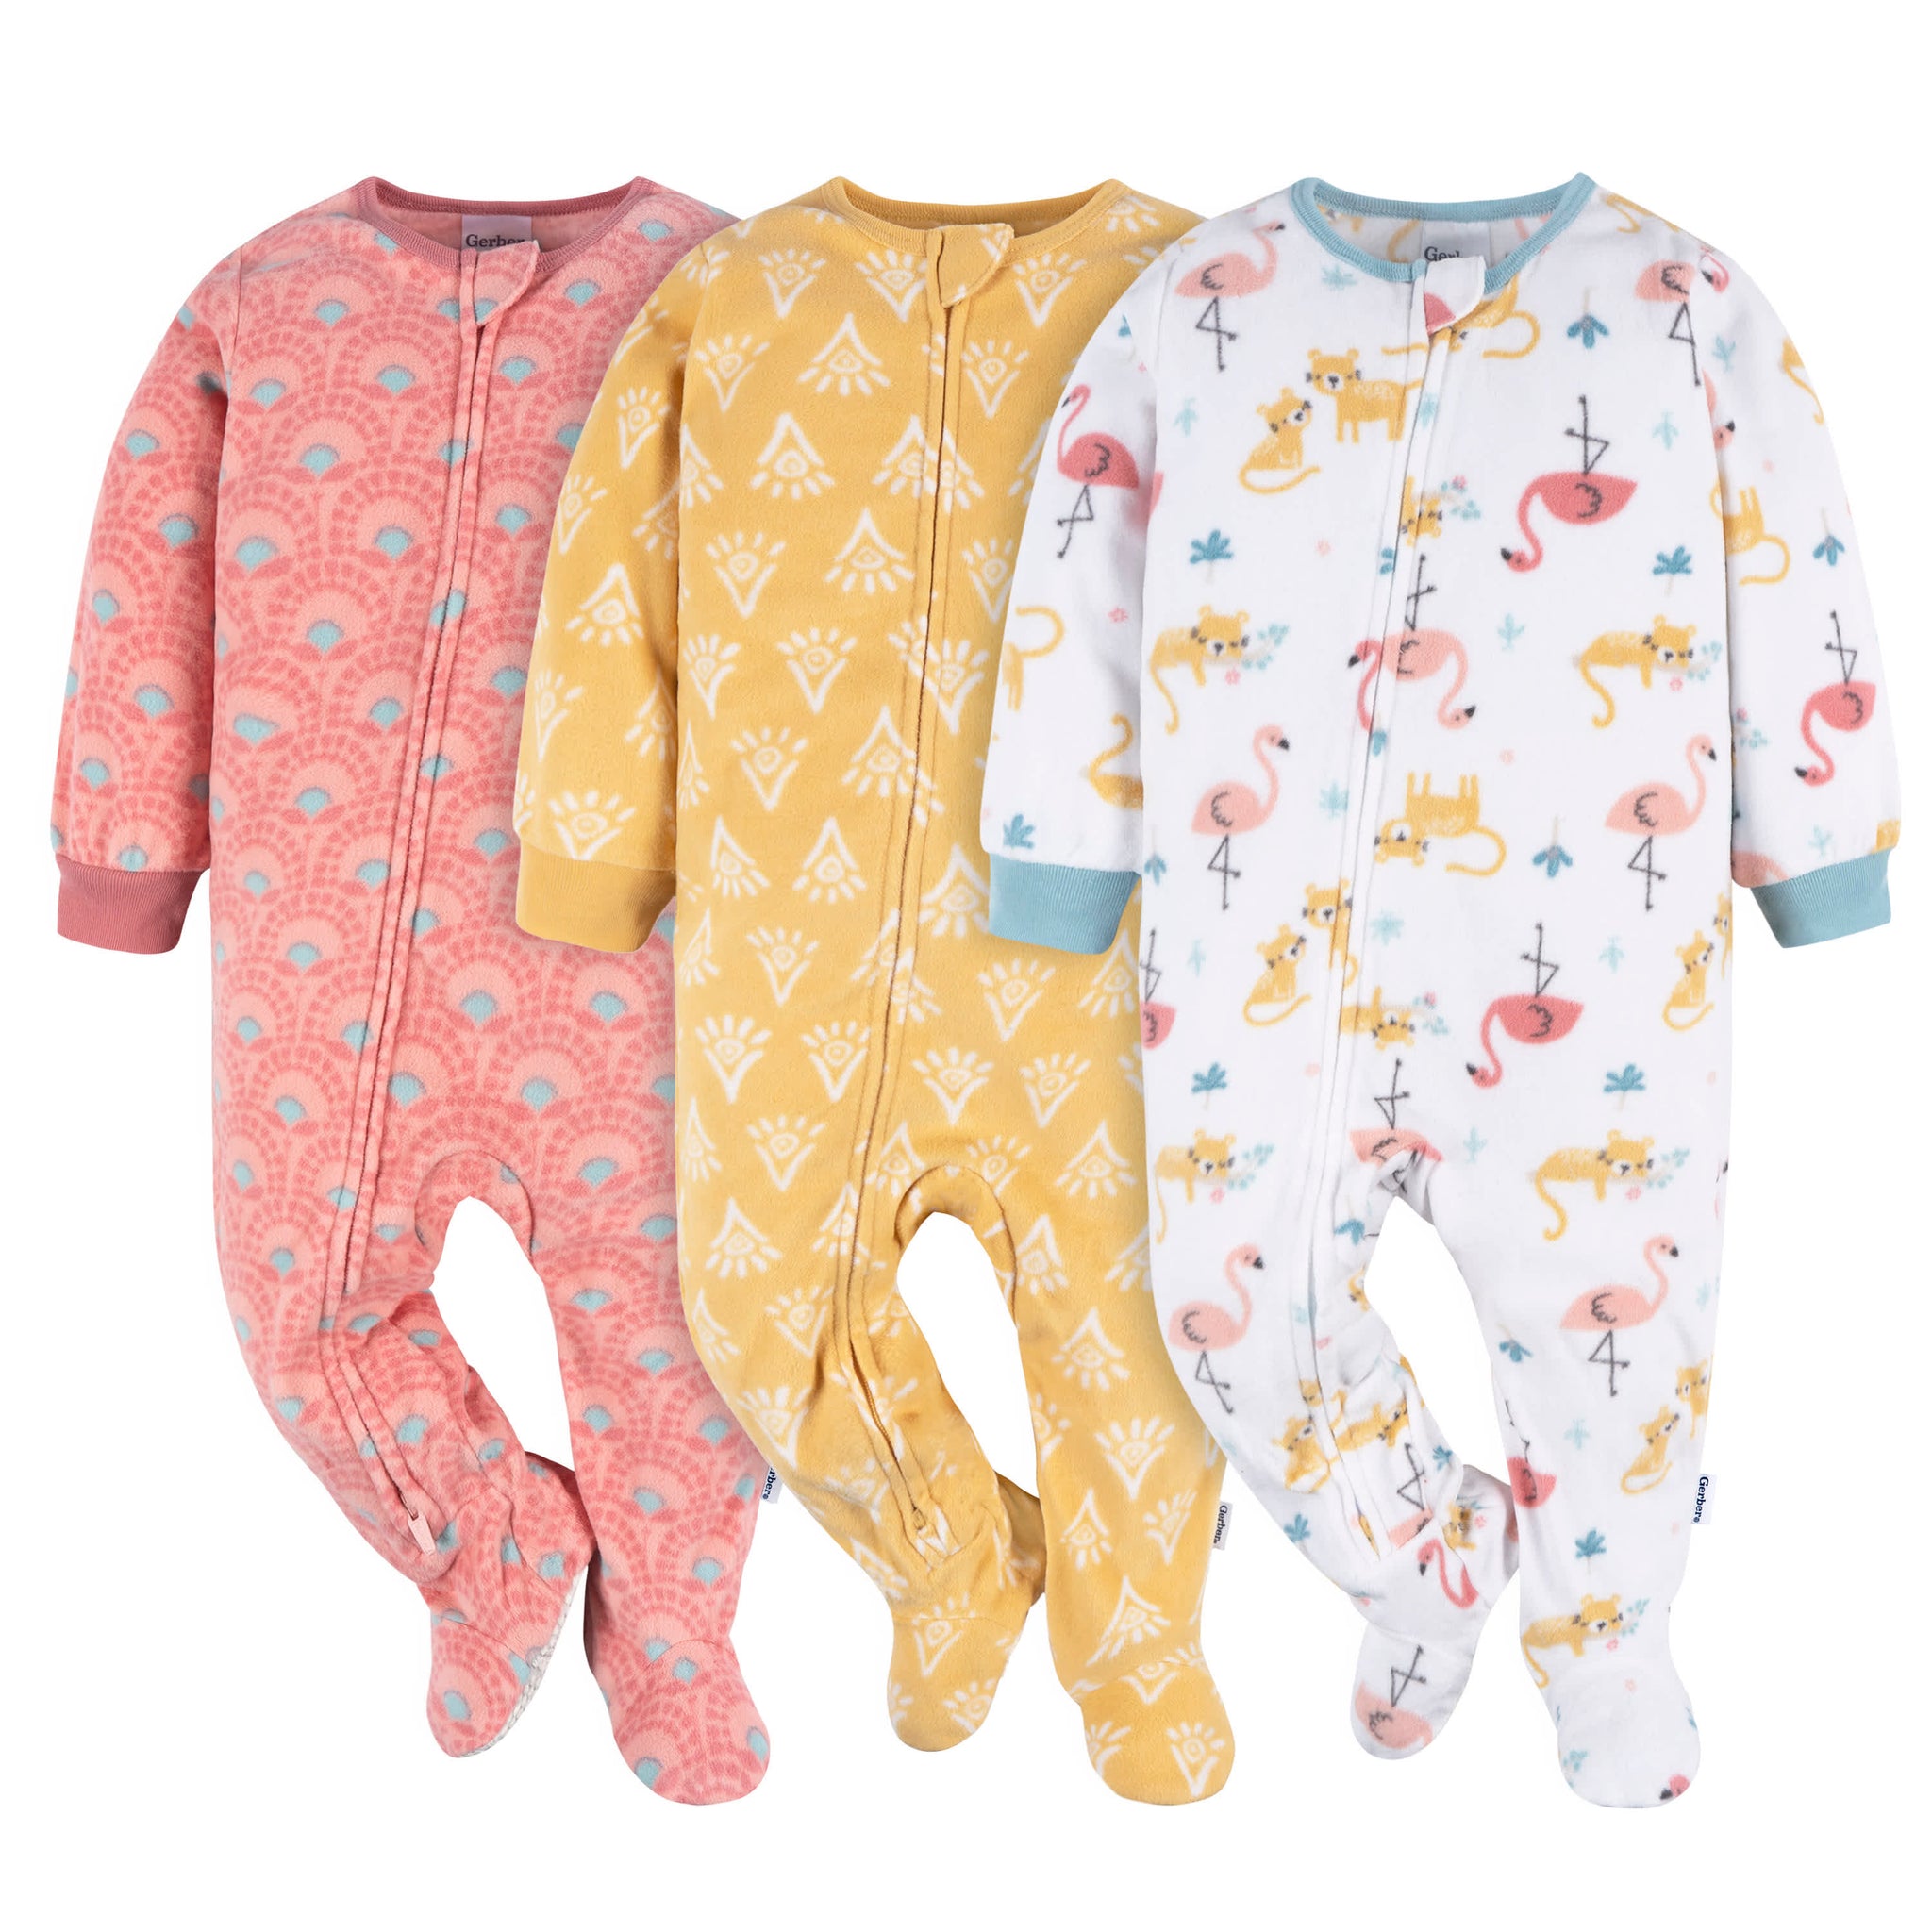 3-Pack Baby & Toddler Girls Pink Flamingos Fleece Pajamas-Gerber Childrenswear Wholesale